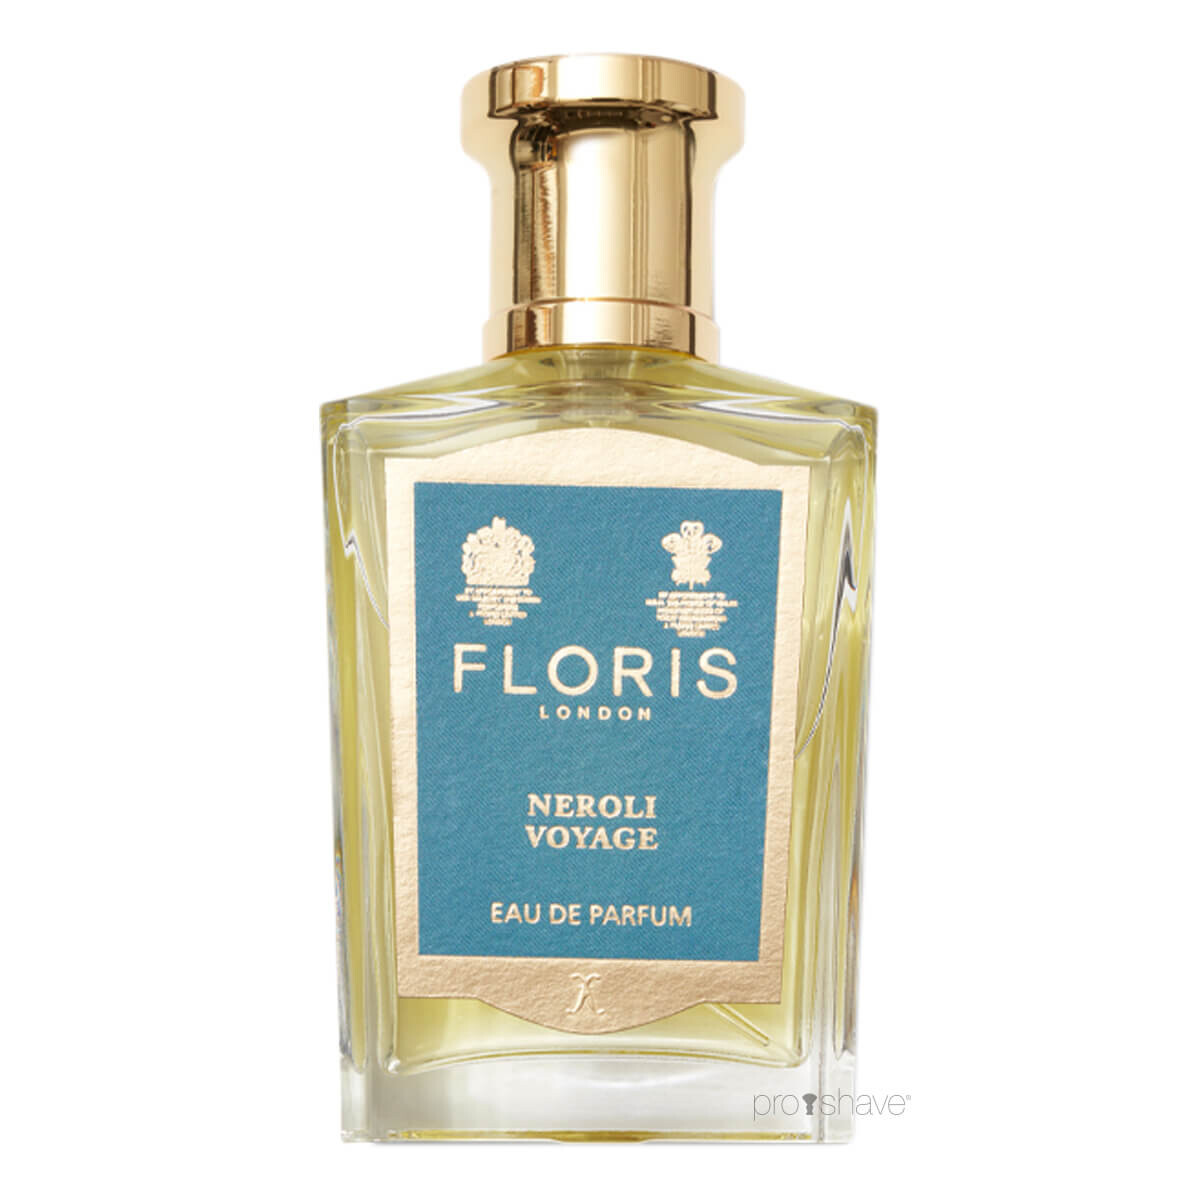 Se Floris Neroli Voyage, Eau de Parfum, 50 ml. hos Proshave